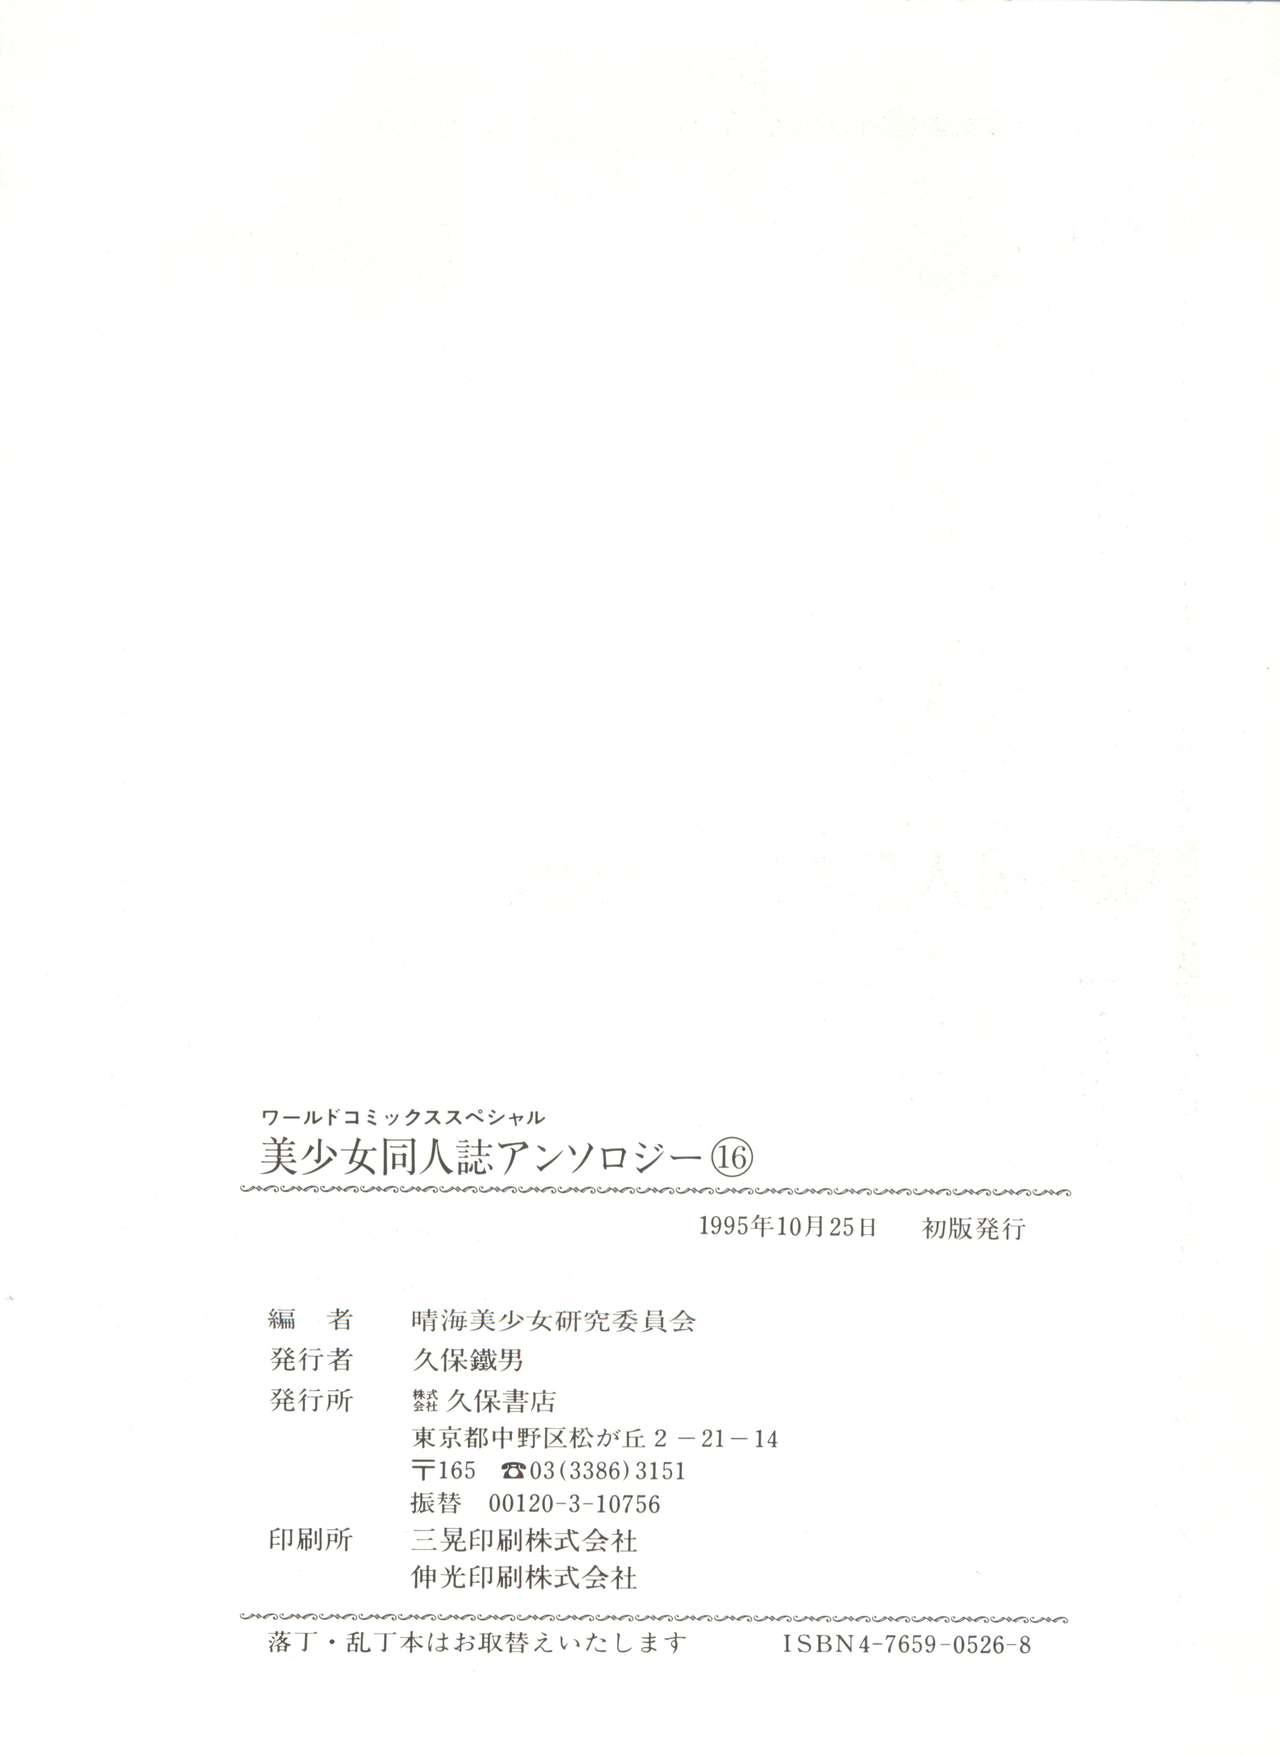 Bishoujo Doujinshi Anthology 16 - Moon Paradise 10 Tsuki no Rakuen 146